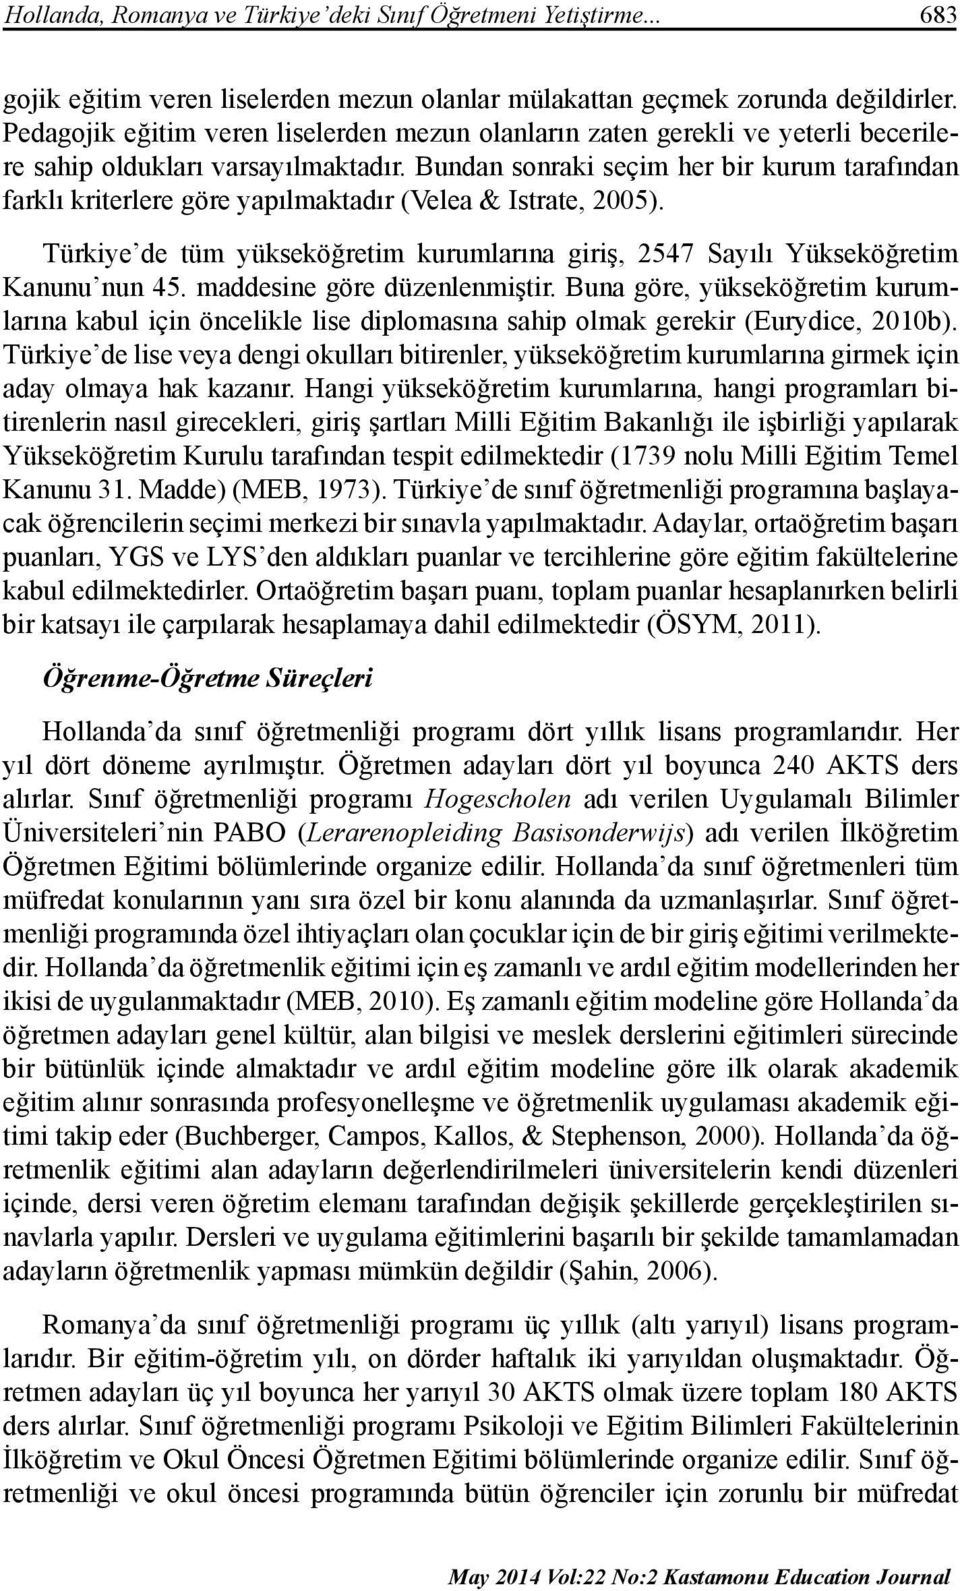 Bundan sonraki seçim her bir kurum tarafından farklı kriterlere göre yapılmaktadır (Velea & Istrate, 2005). Türkiye de tüm yükseköğretim kurumlarına giriş, 2547 Sayılı Yükseköğretim Kanunu nun 45.